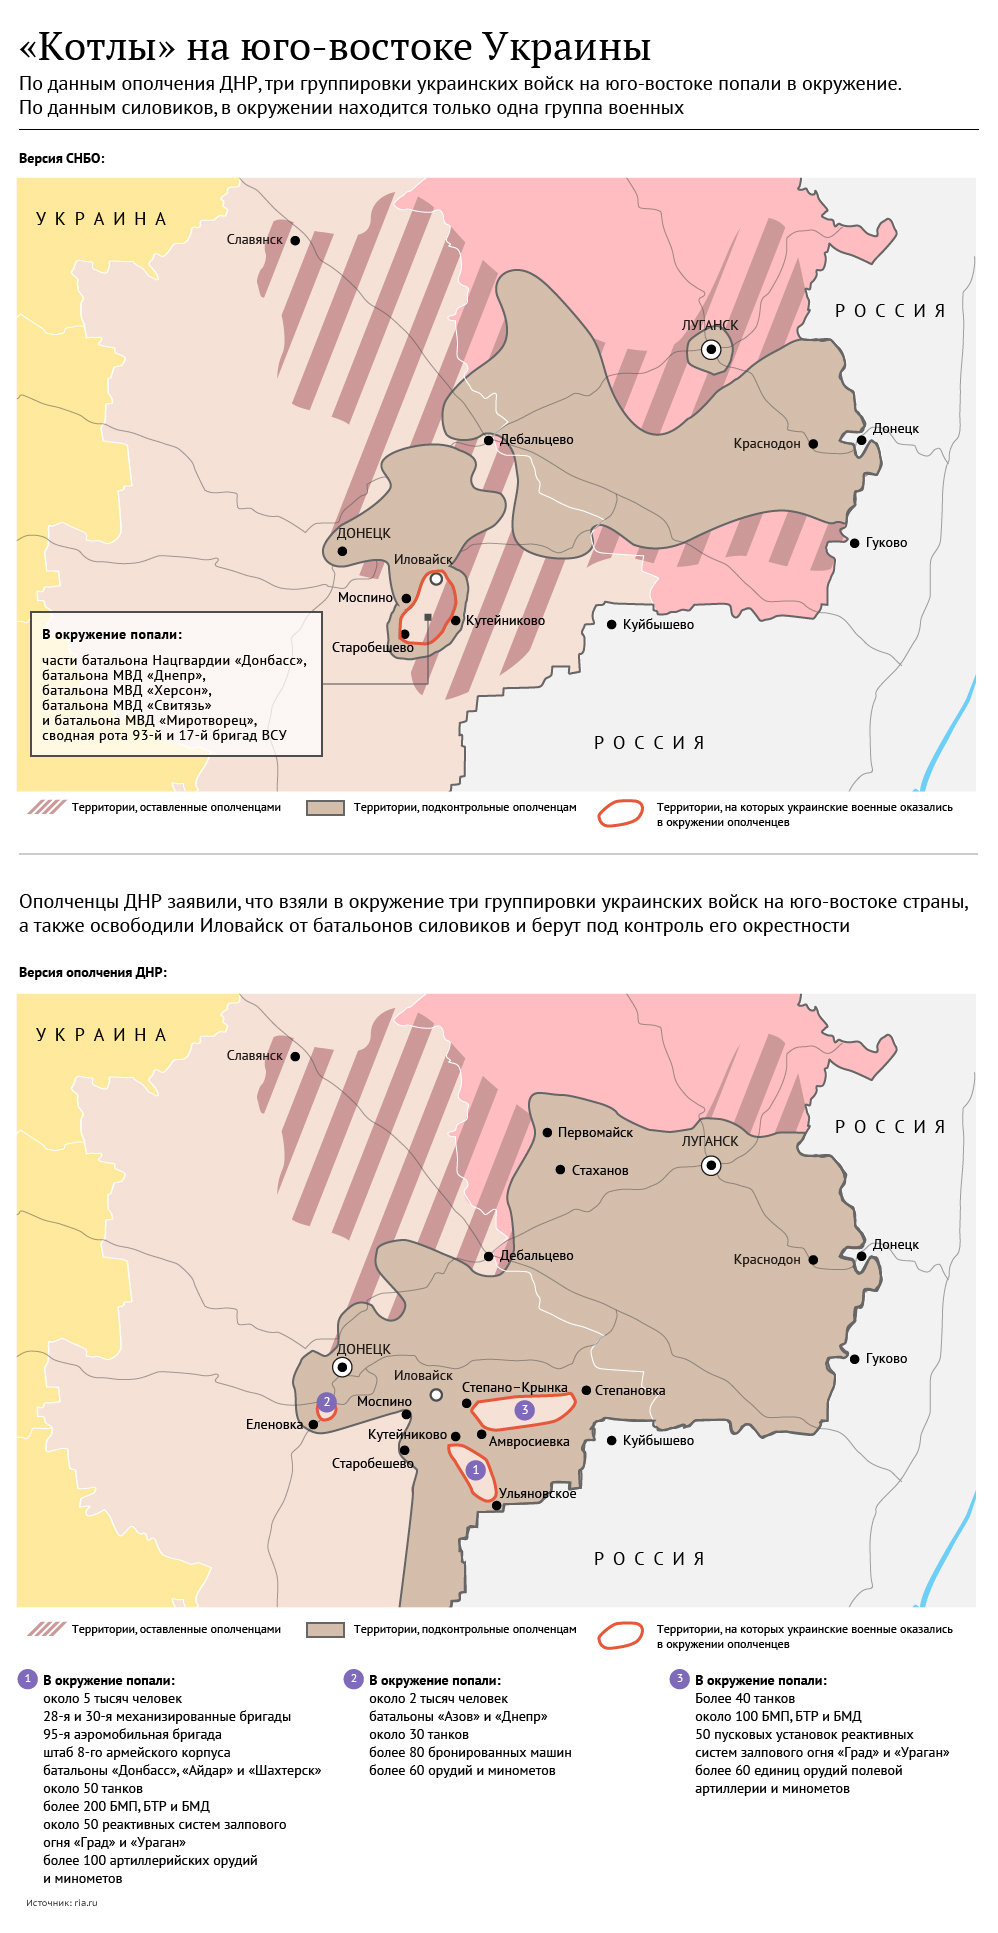 Котлы на юго-востоке Украины: версии силовиков и ополченцев. Инфографика